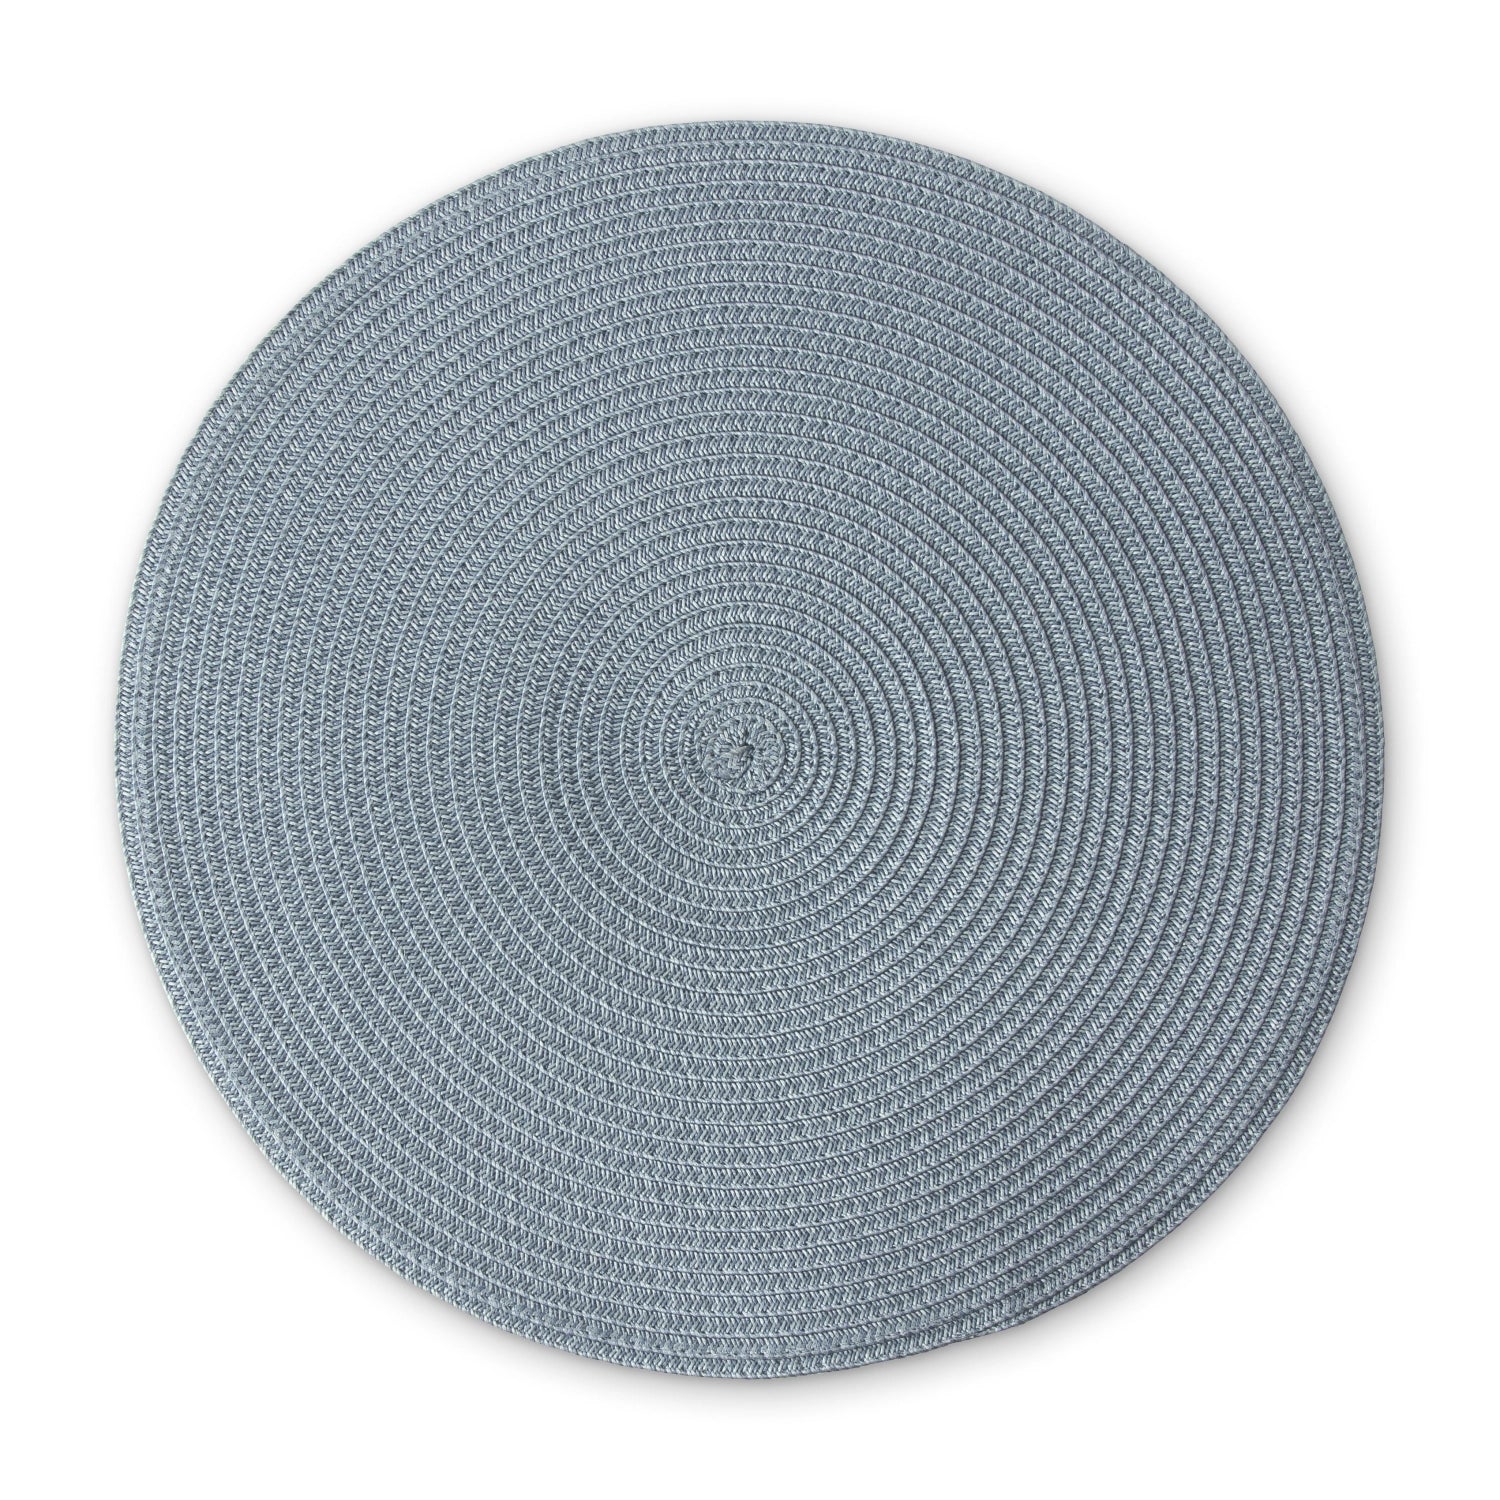 Tischset rund, graublau, 38 cm - KAQTU Design